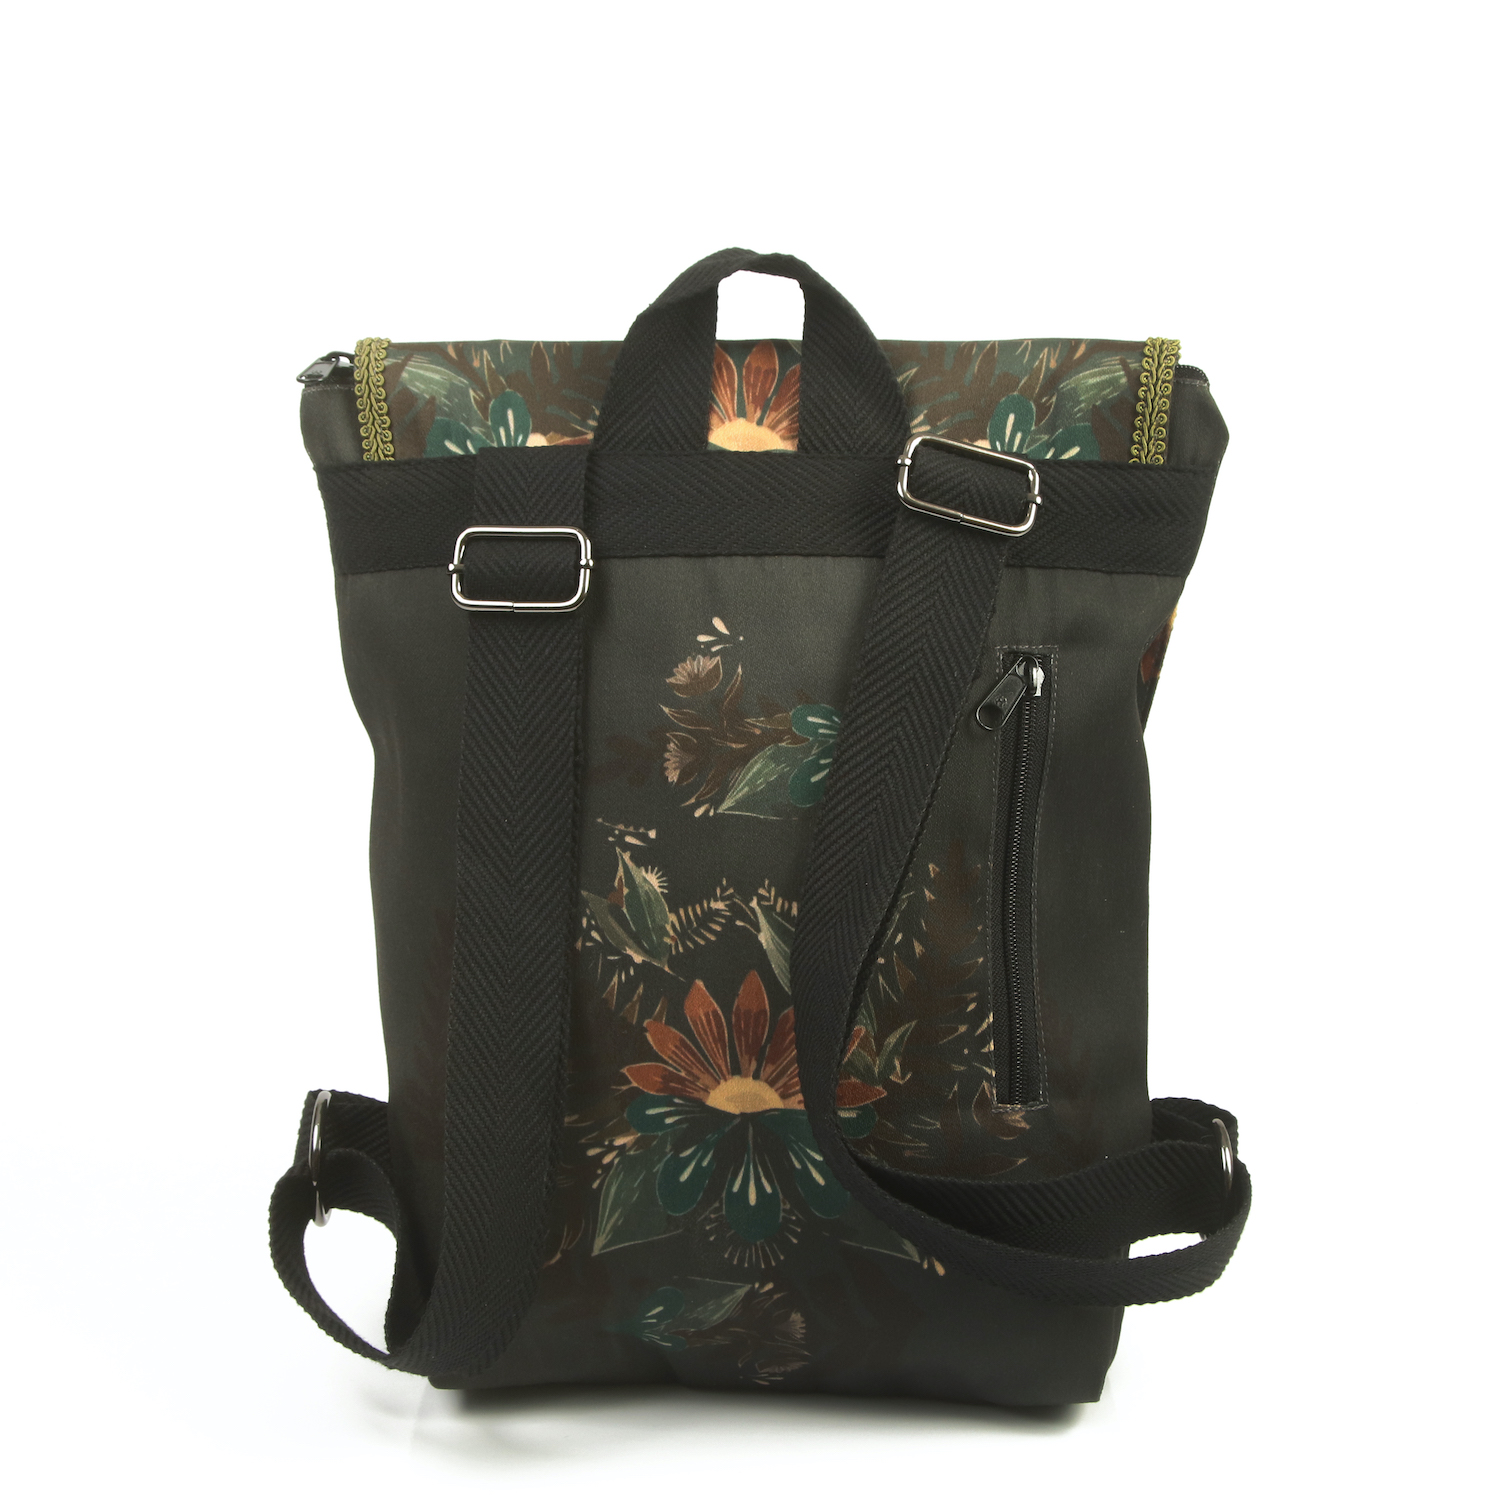 LazyDayz Designs Backpack γυναικείος σάκος πλάτης χειροποίητος bb0706c